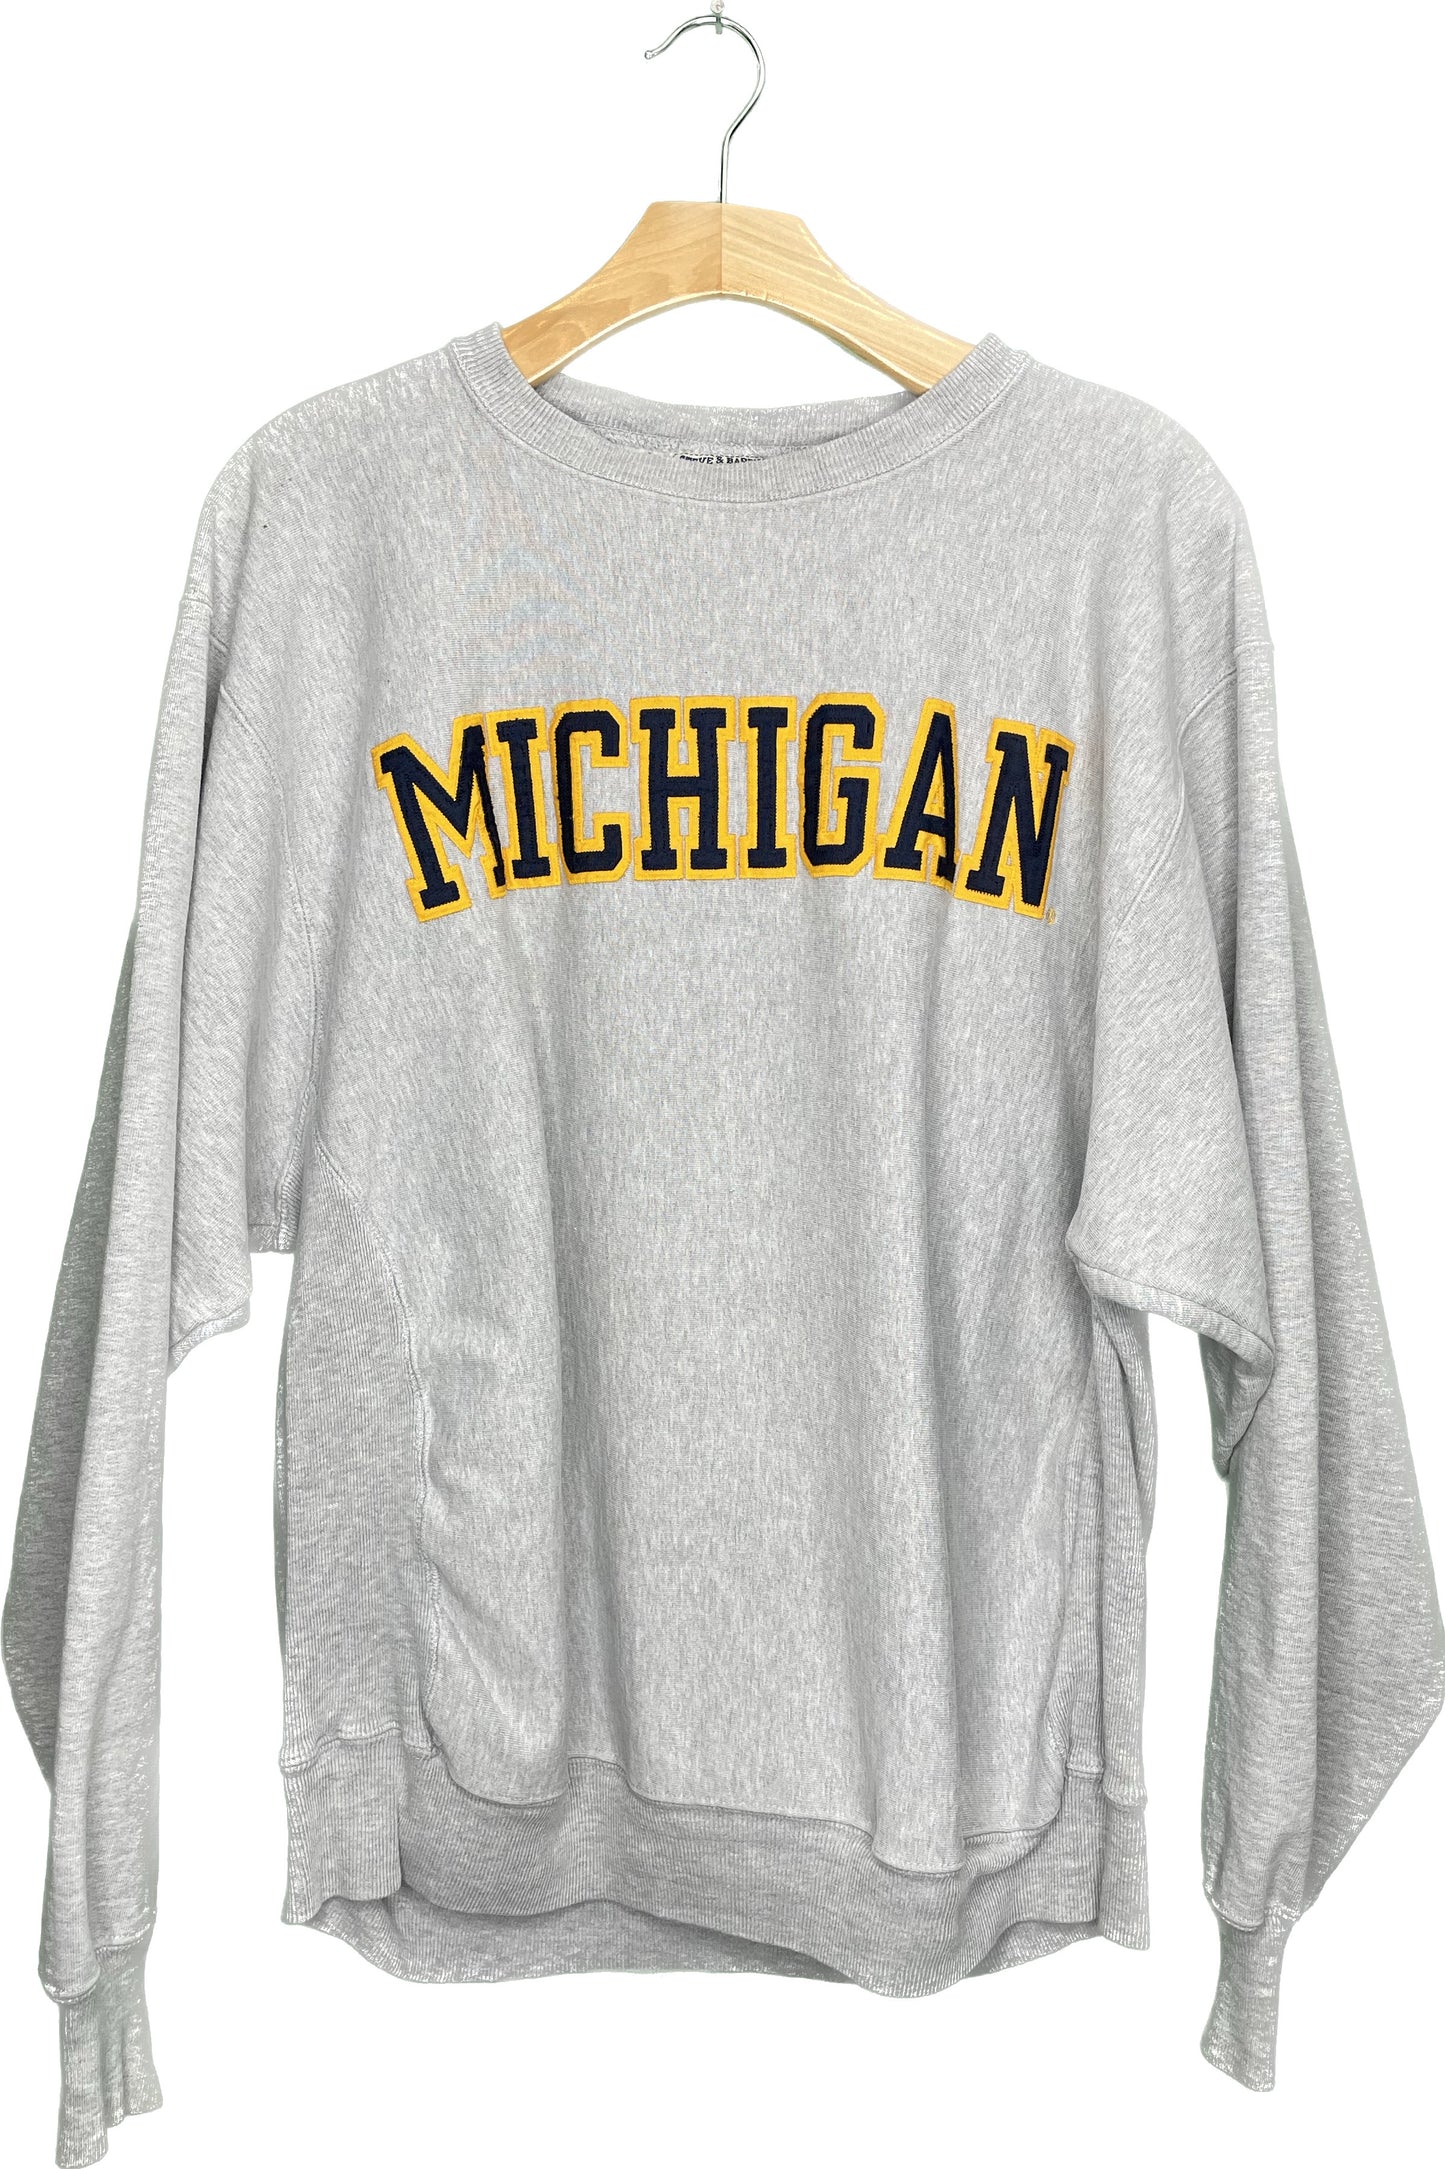 Vintage XL Michigan Embroidered Sweatshirt